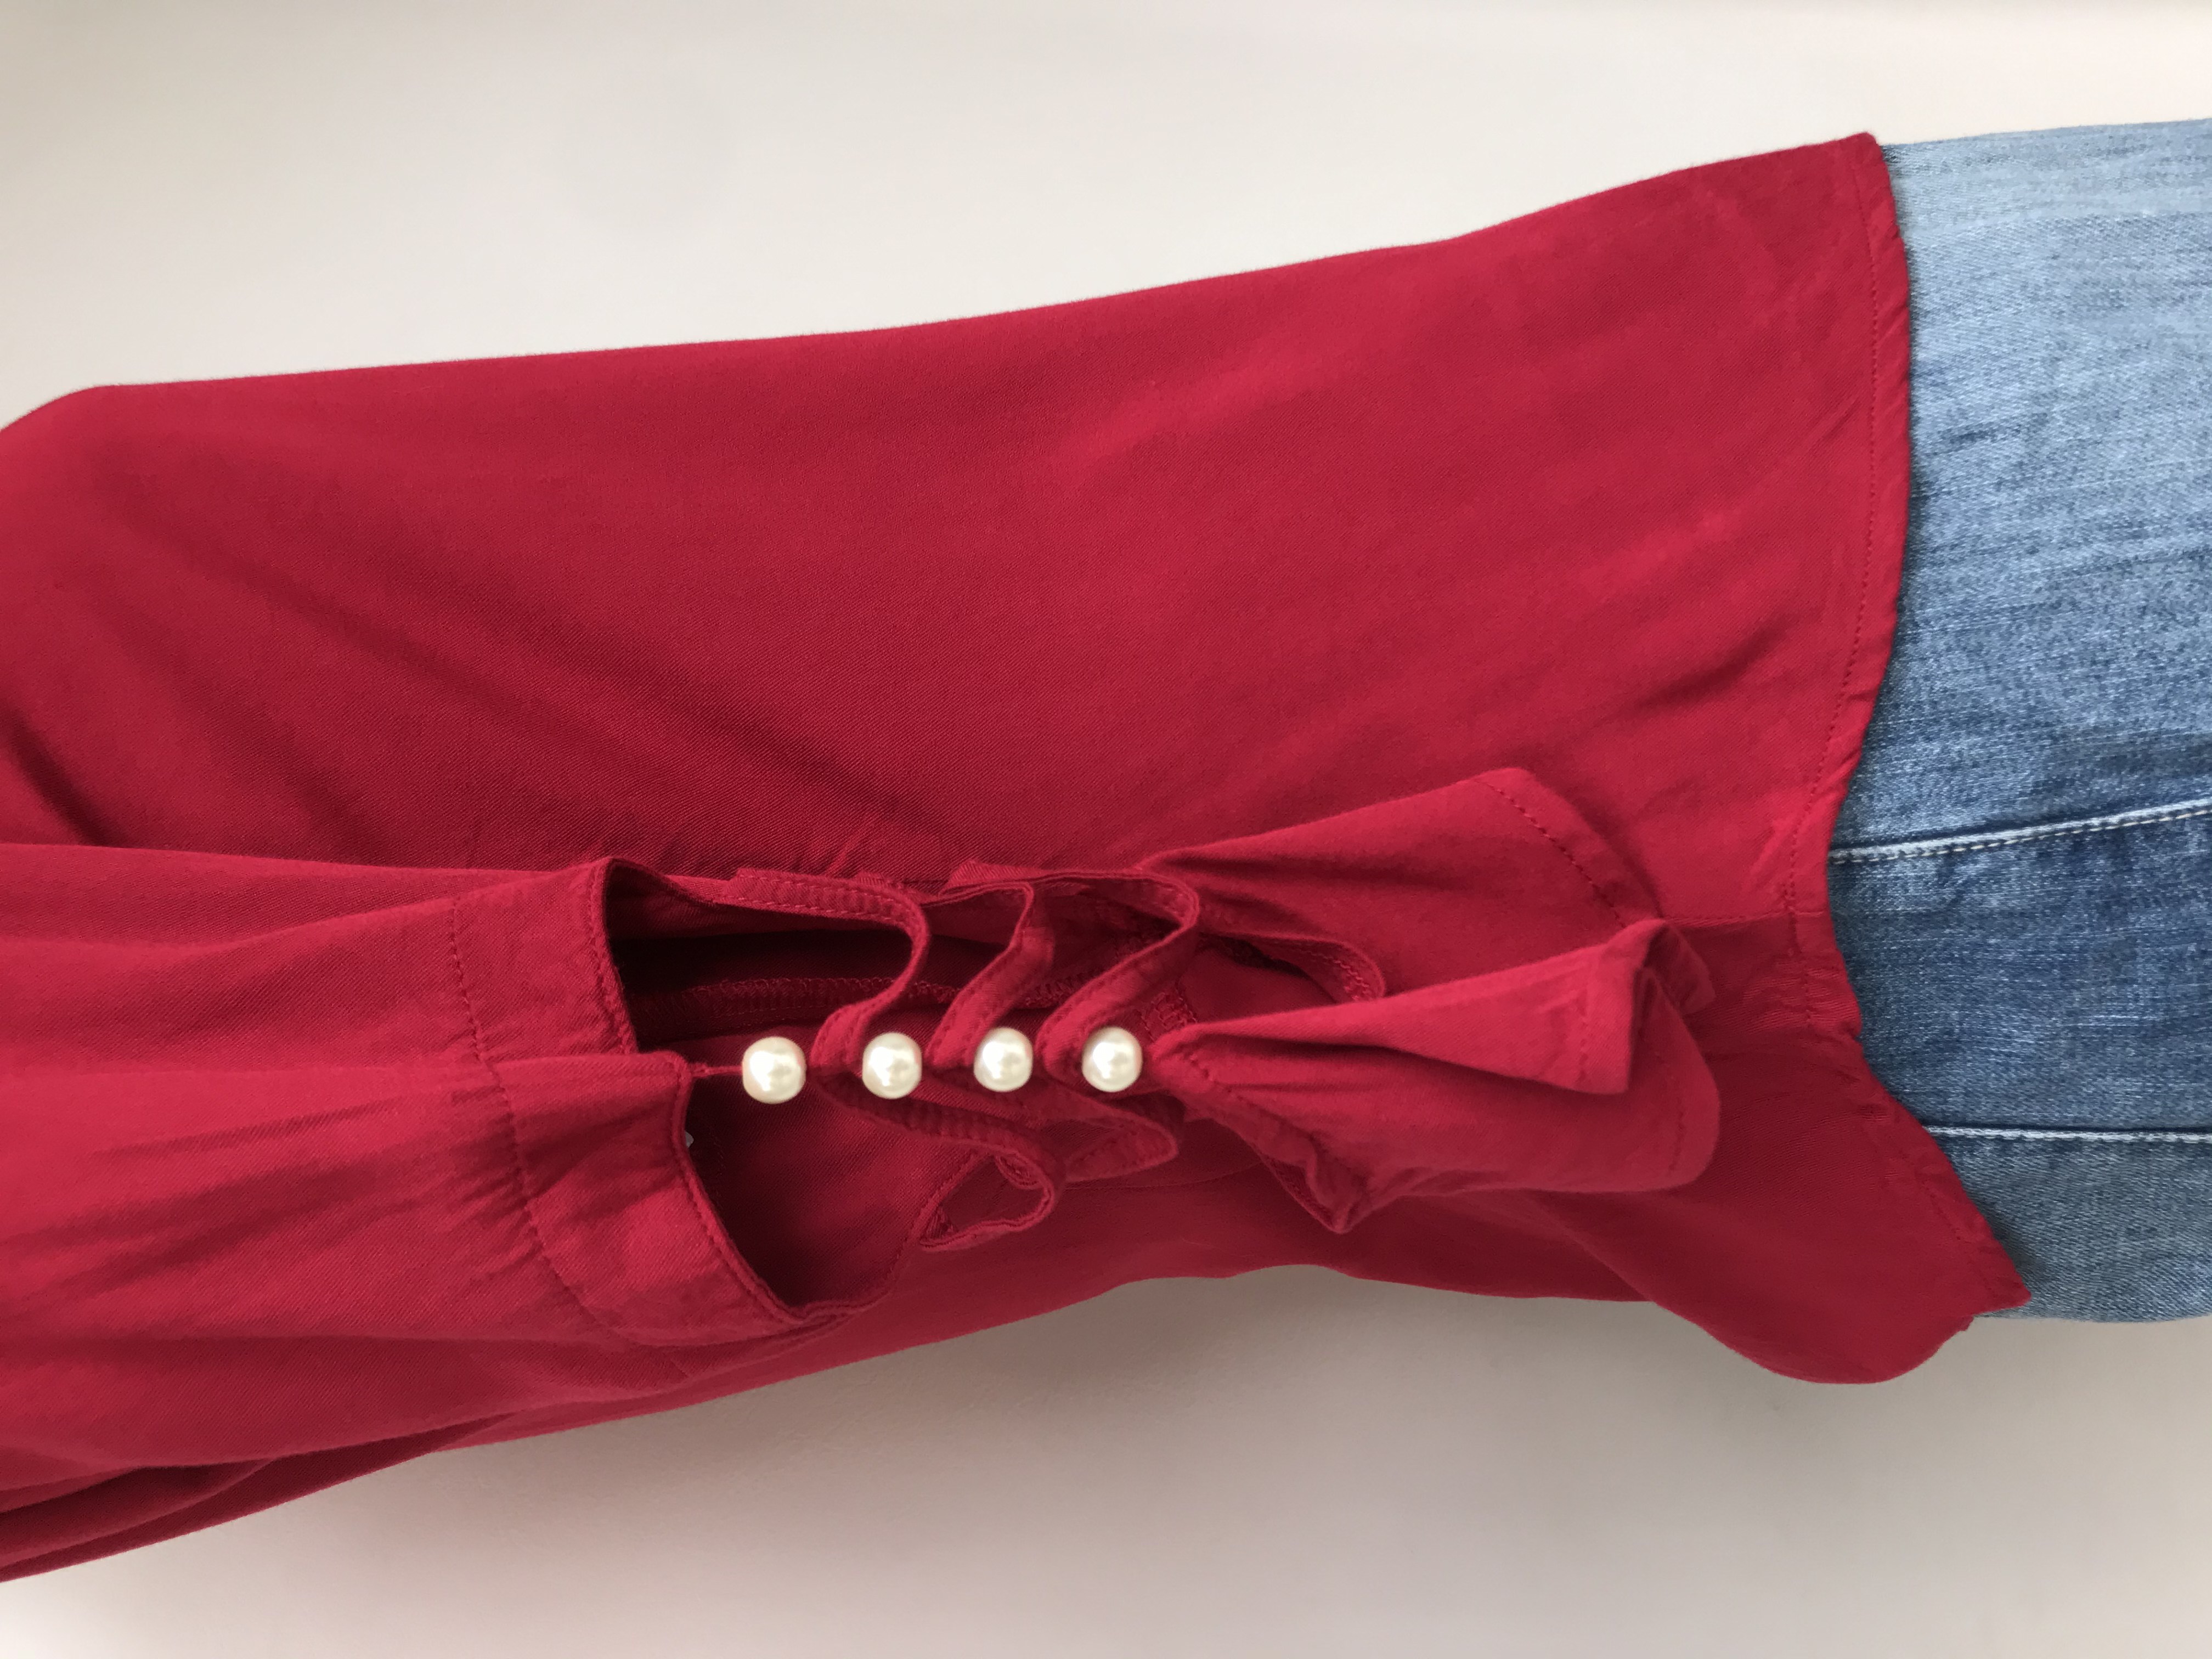 Blusa roja, tela fresca tipo chalis, mangas con calado y perlas
Talla S